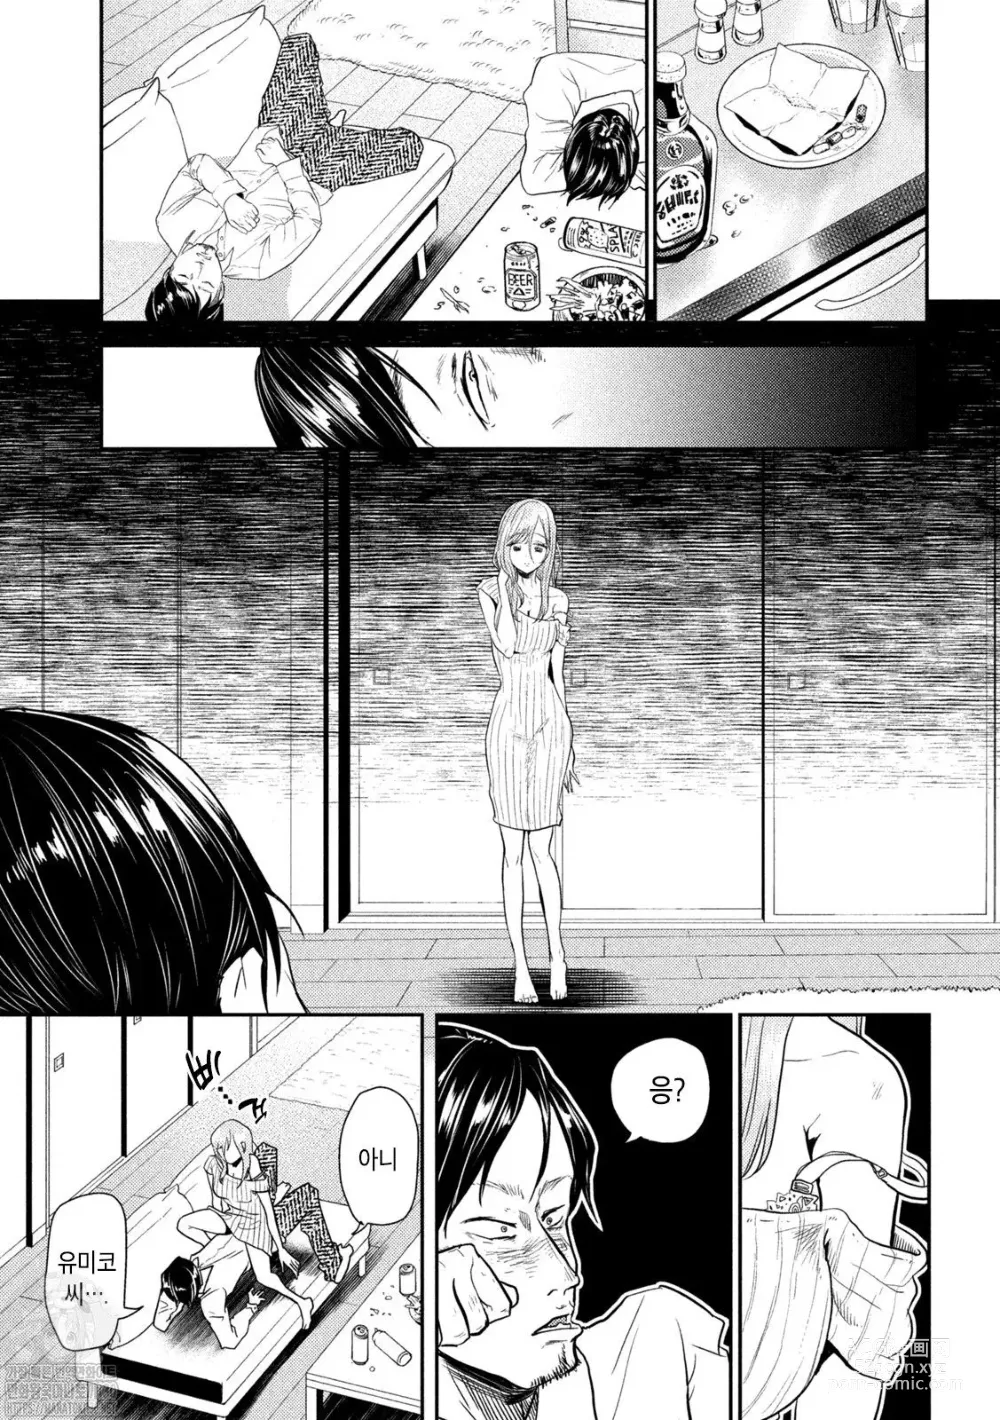 Page 27 of manga Haha wa Tsuyoi.